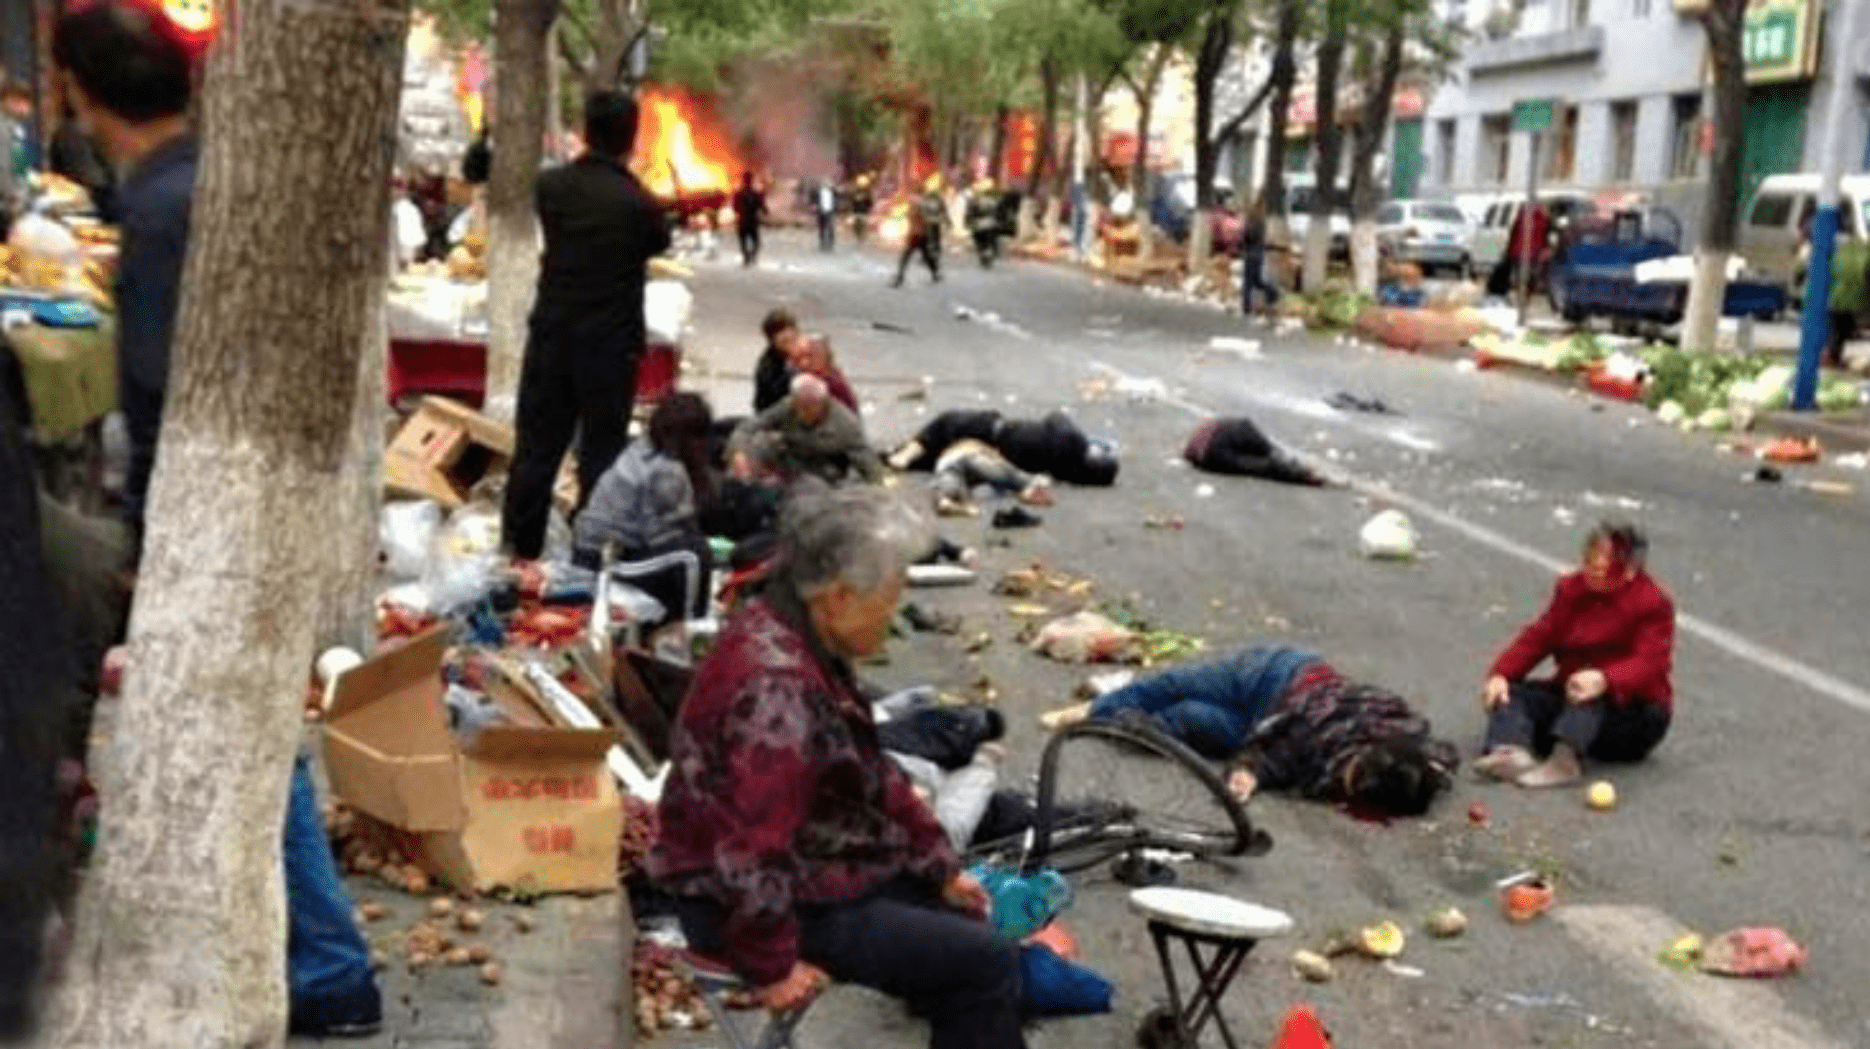 Street scene in China after Uighur terrorist attack